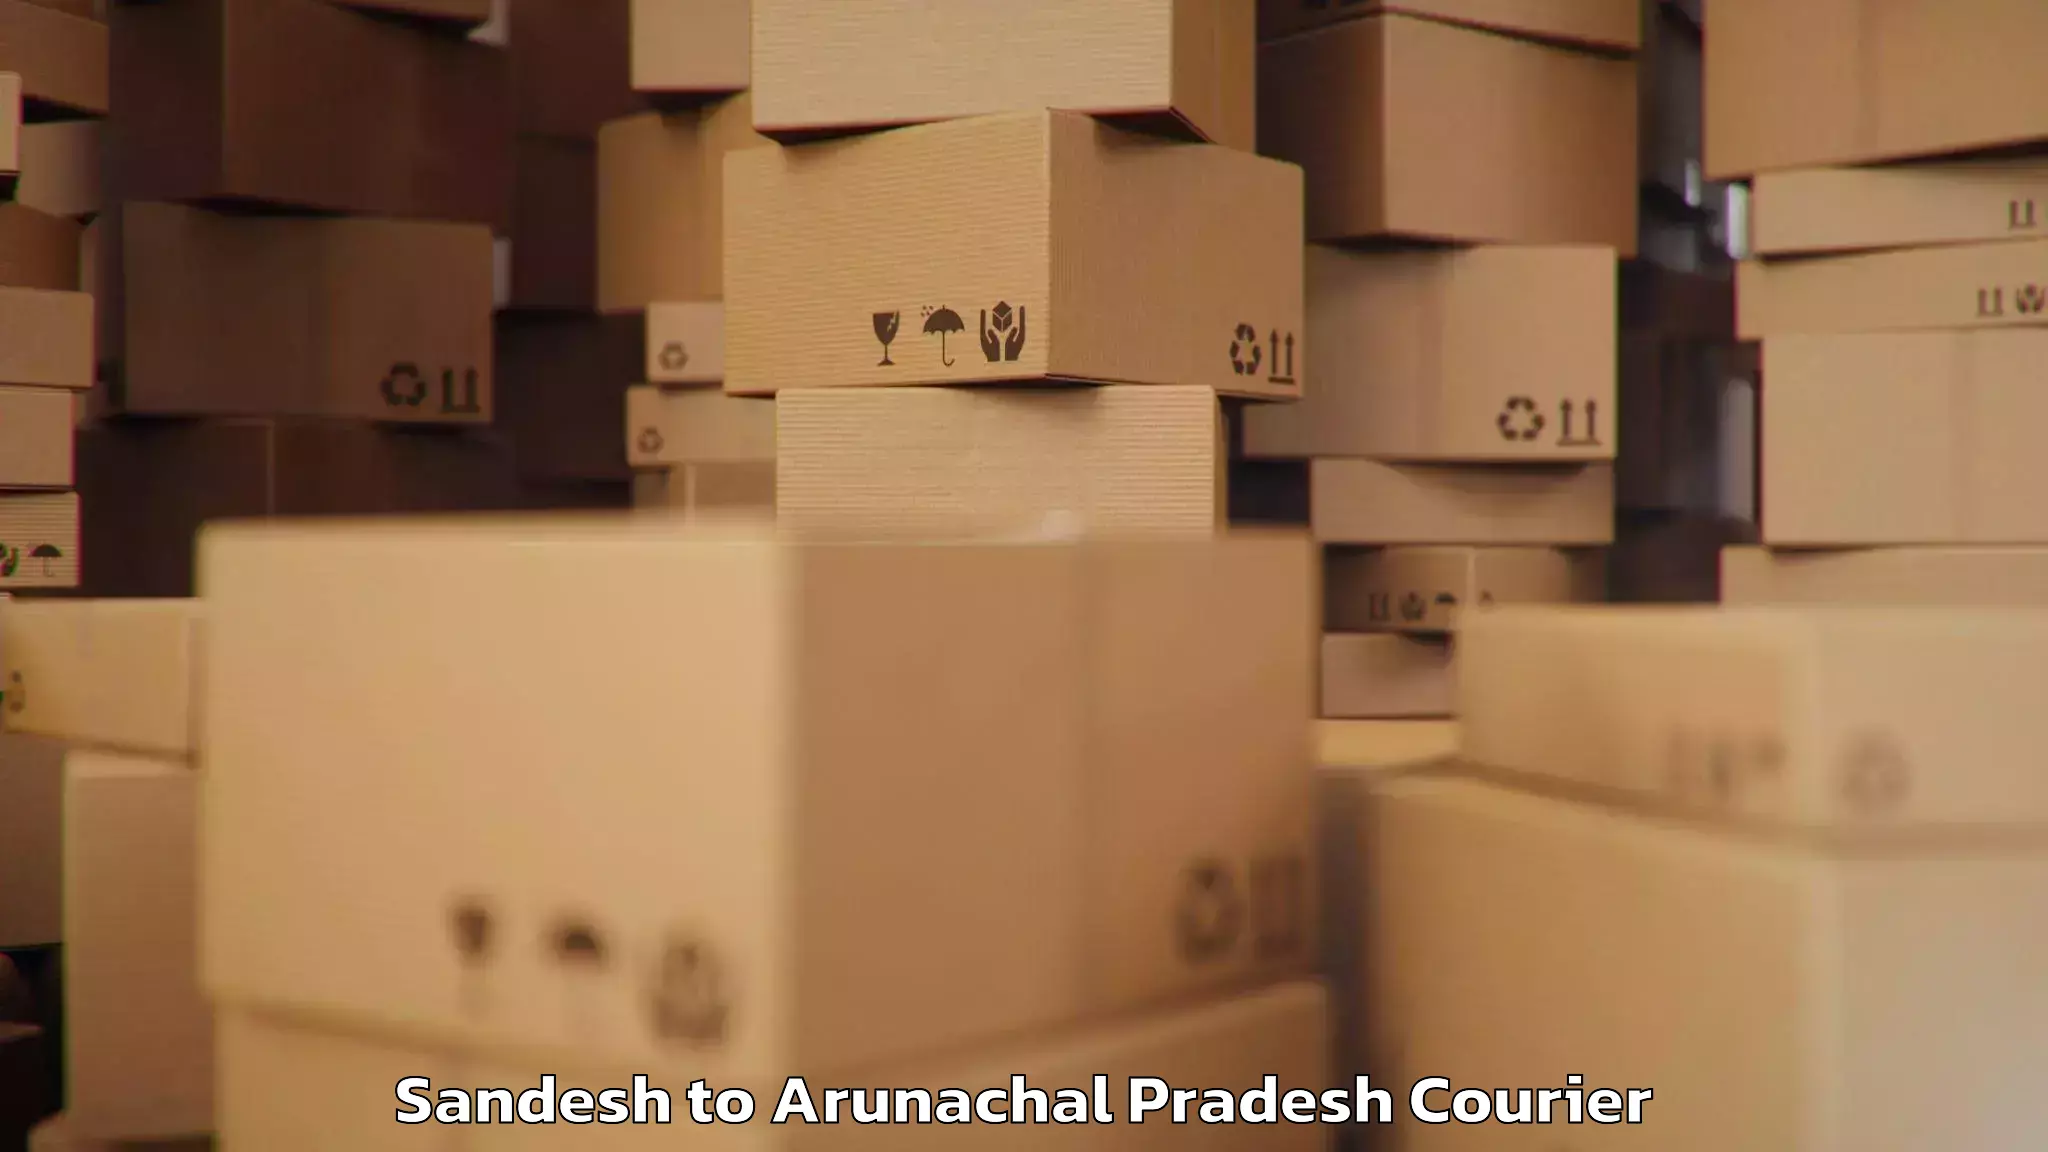 Baggage transport updates Sandesh to Arunachal Pradesh